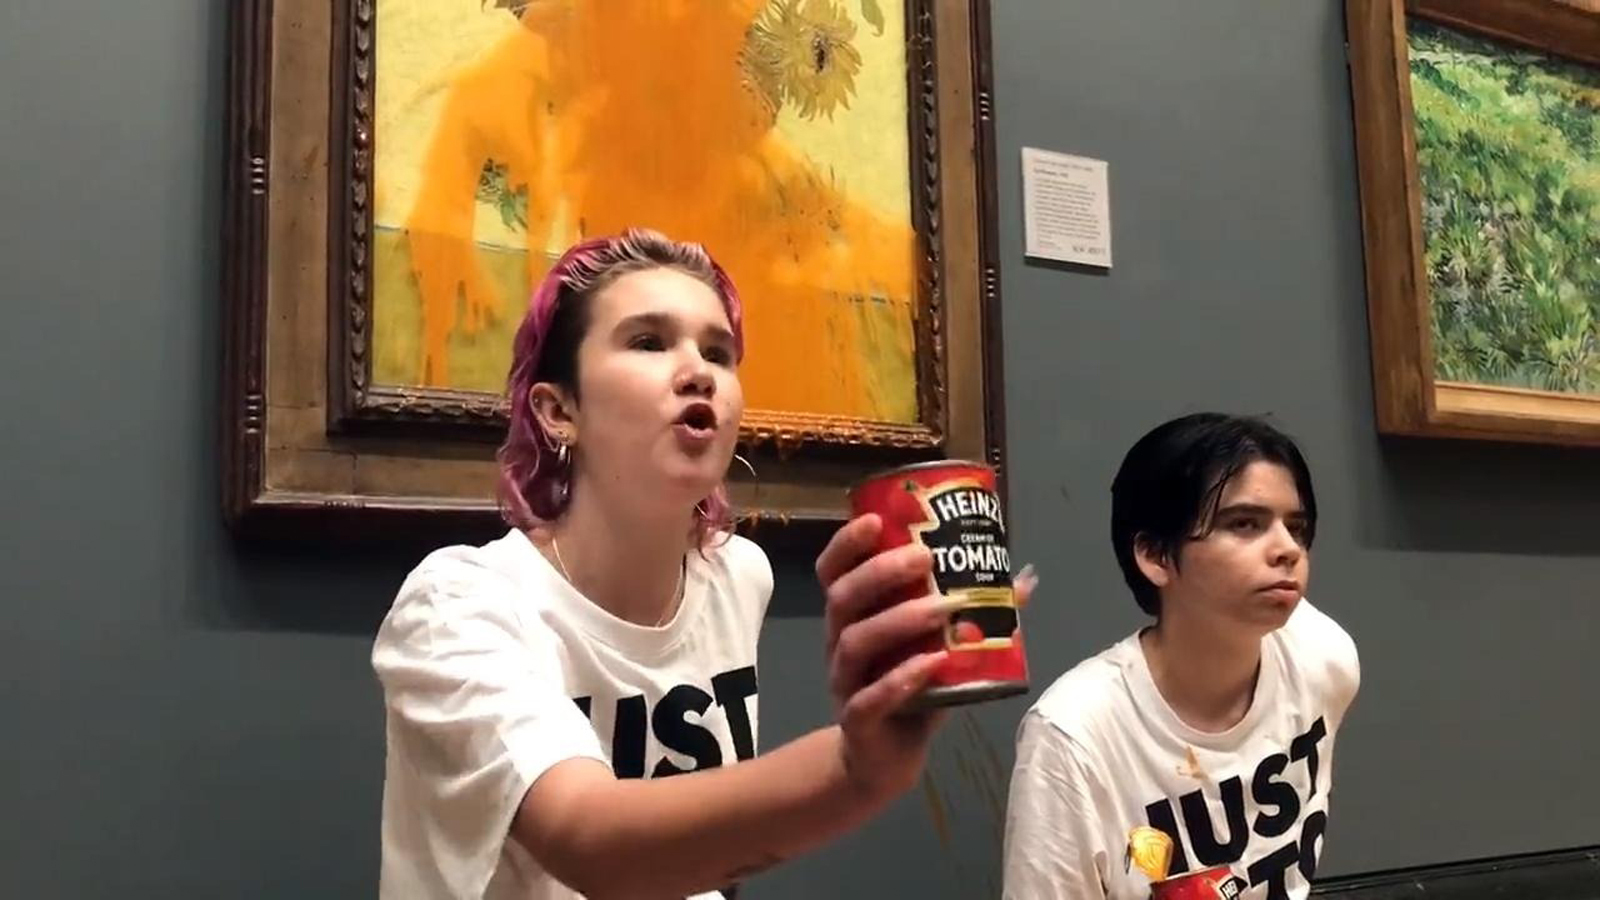 Dos activistas de 'Just Stop Oil' protestan contra la producción y financiación de combustibles fósiles después de lanzar sopa de tomate al cuadro 'Los girasoles' de Van Gogh en la National Gallery de Londres. -Europa Press